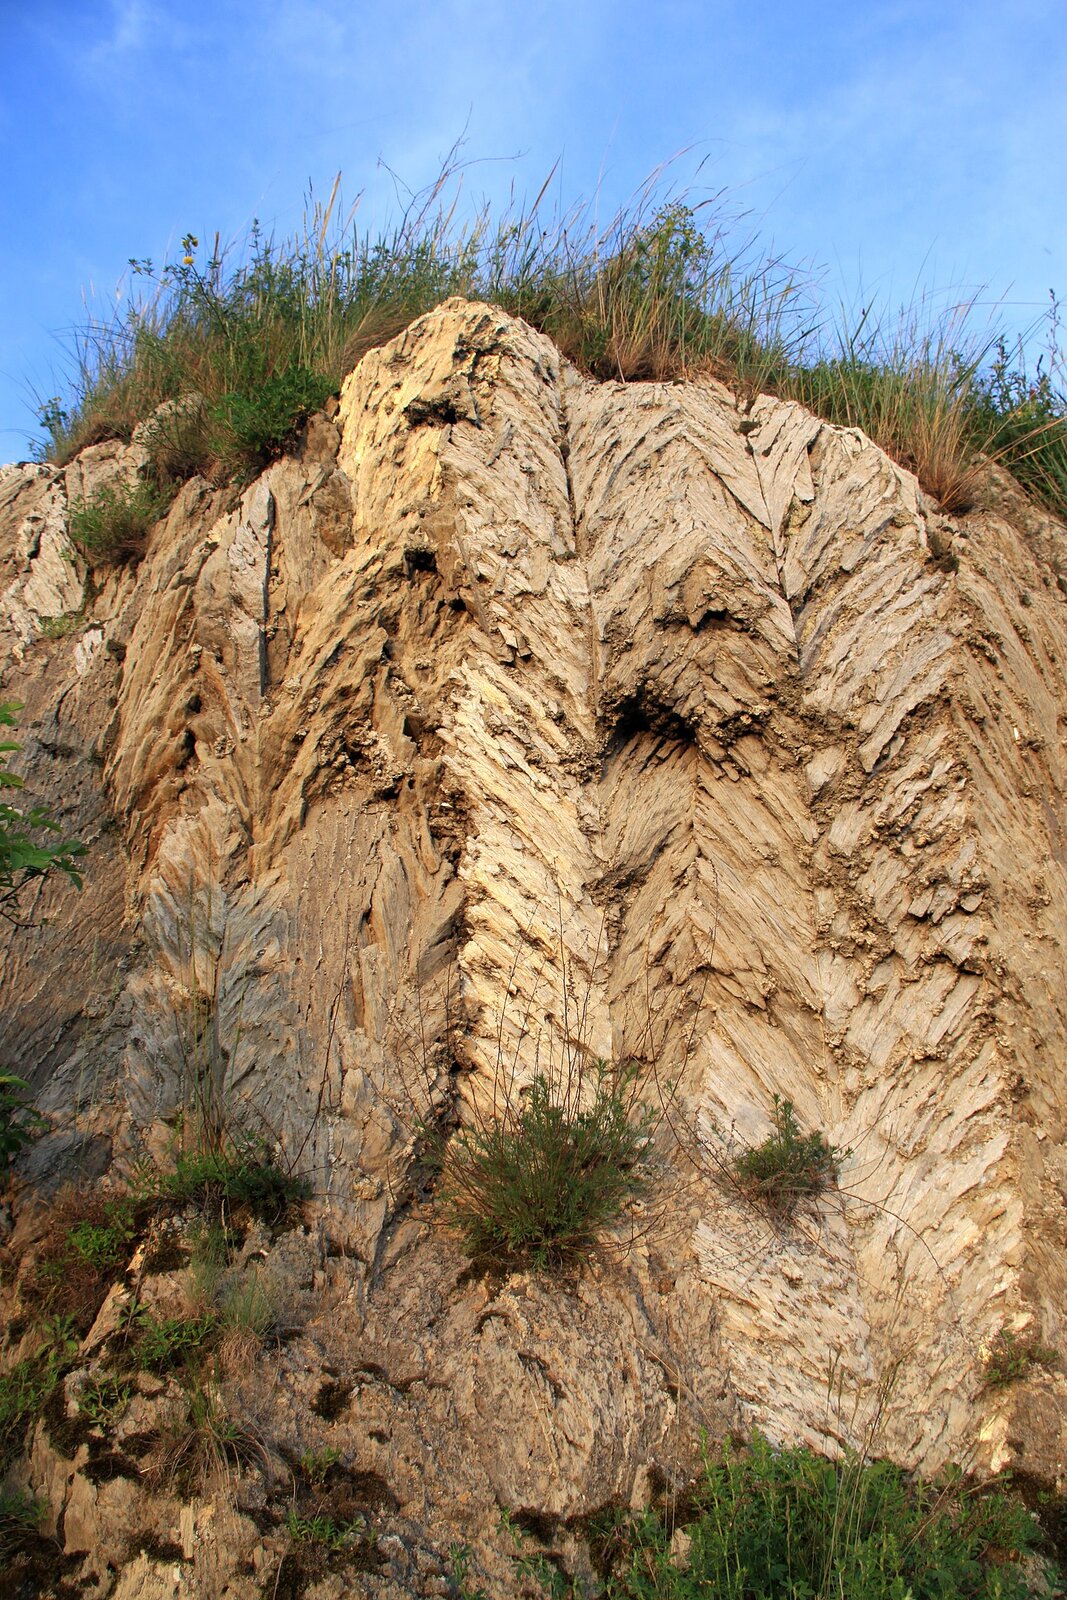 Na zdjęciu widoczna jest skała gipsowa, która tworzy ścianę wzniesienia. Ściana jest jasnoszara, ma nieregularną, chropowatą strukturę, która układa się w charakterystyczną jodełkę. Na szczycie wzniesienia rosną trawy.